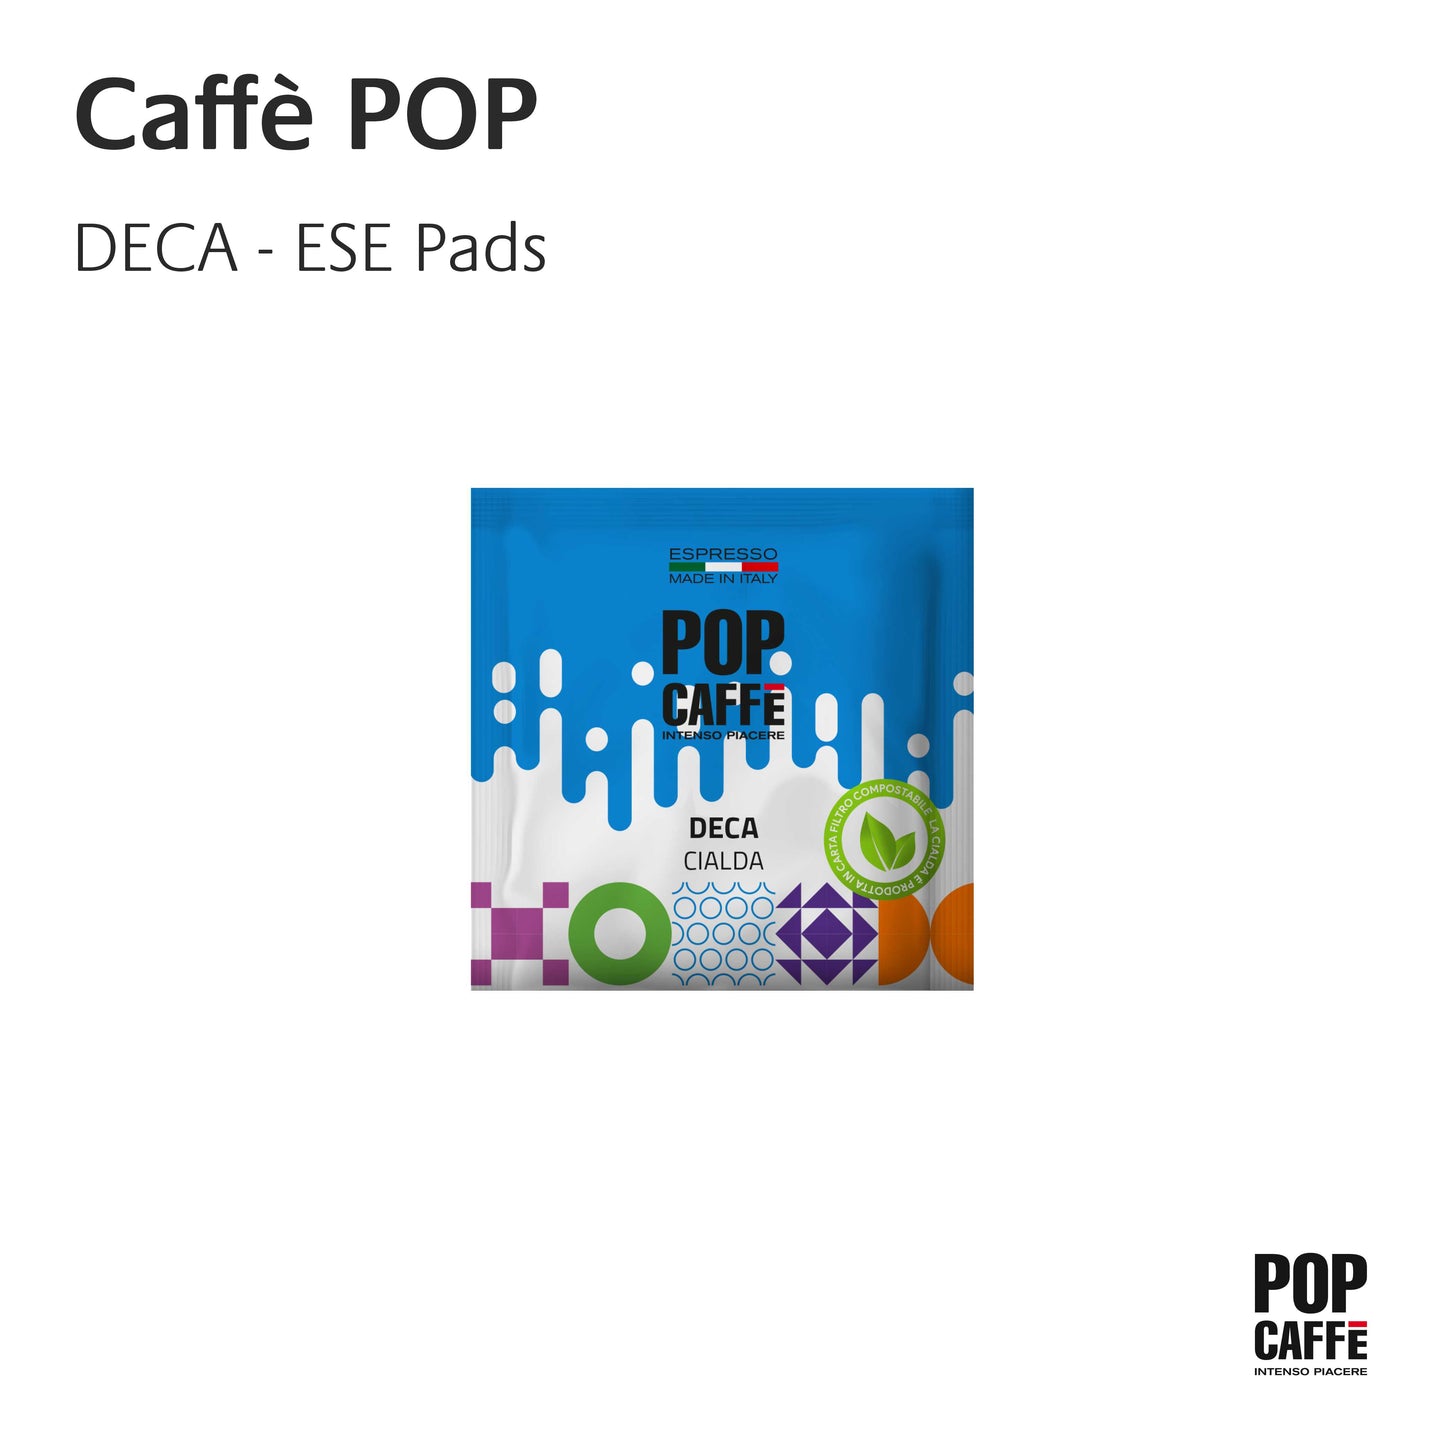 Caffè POP DECA